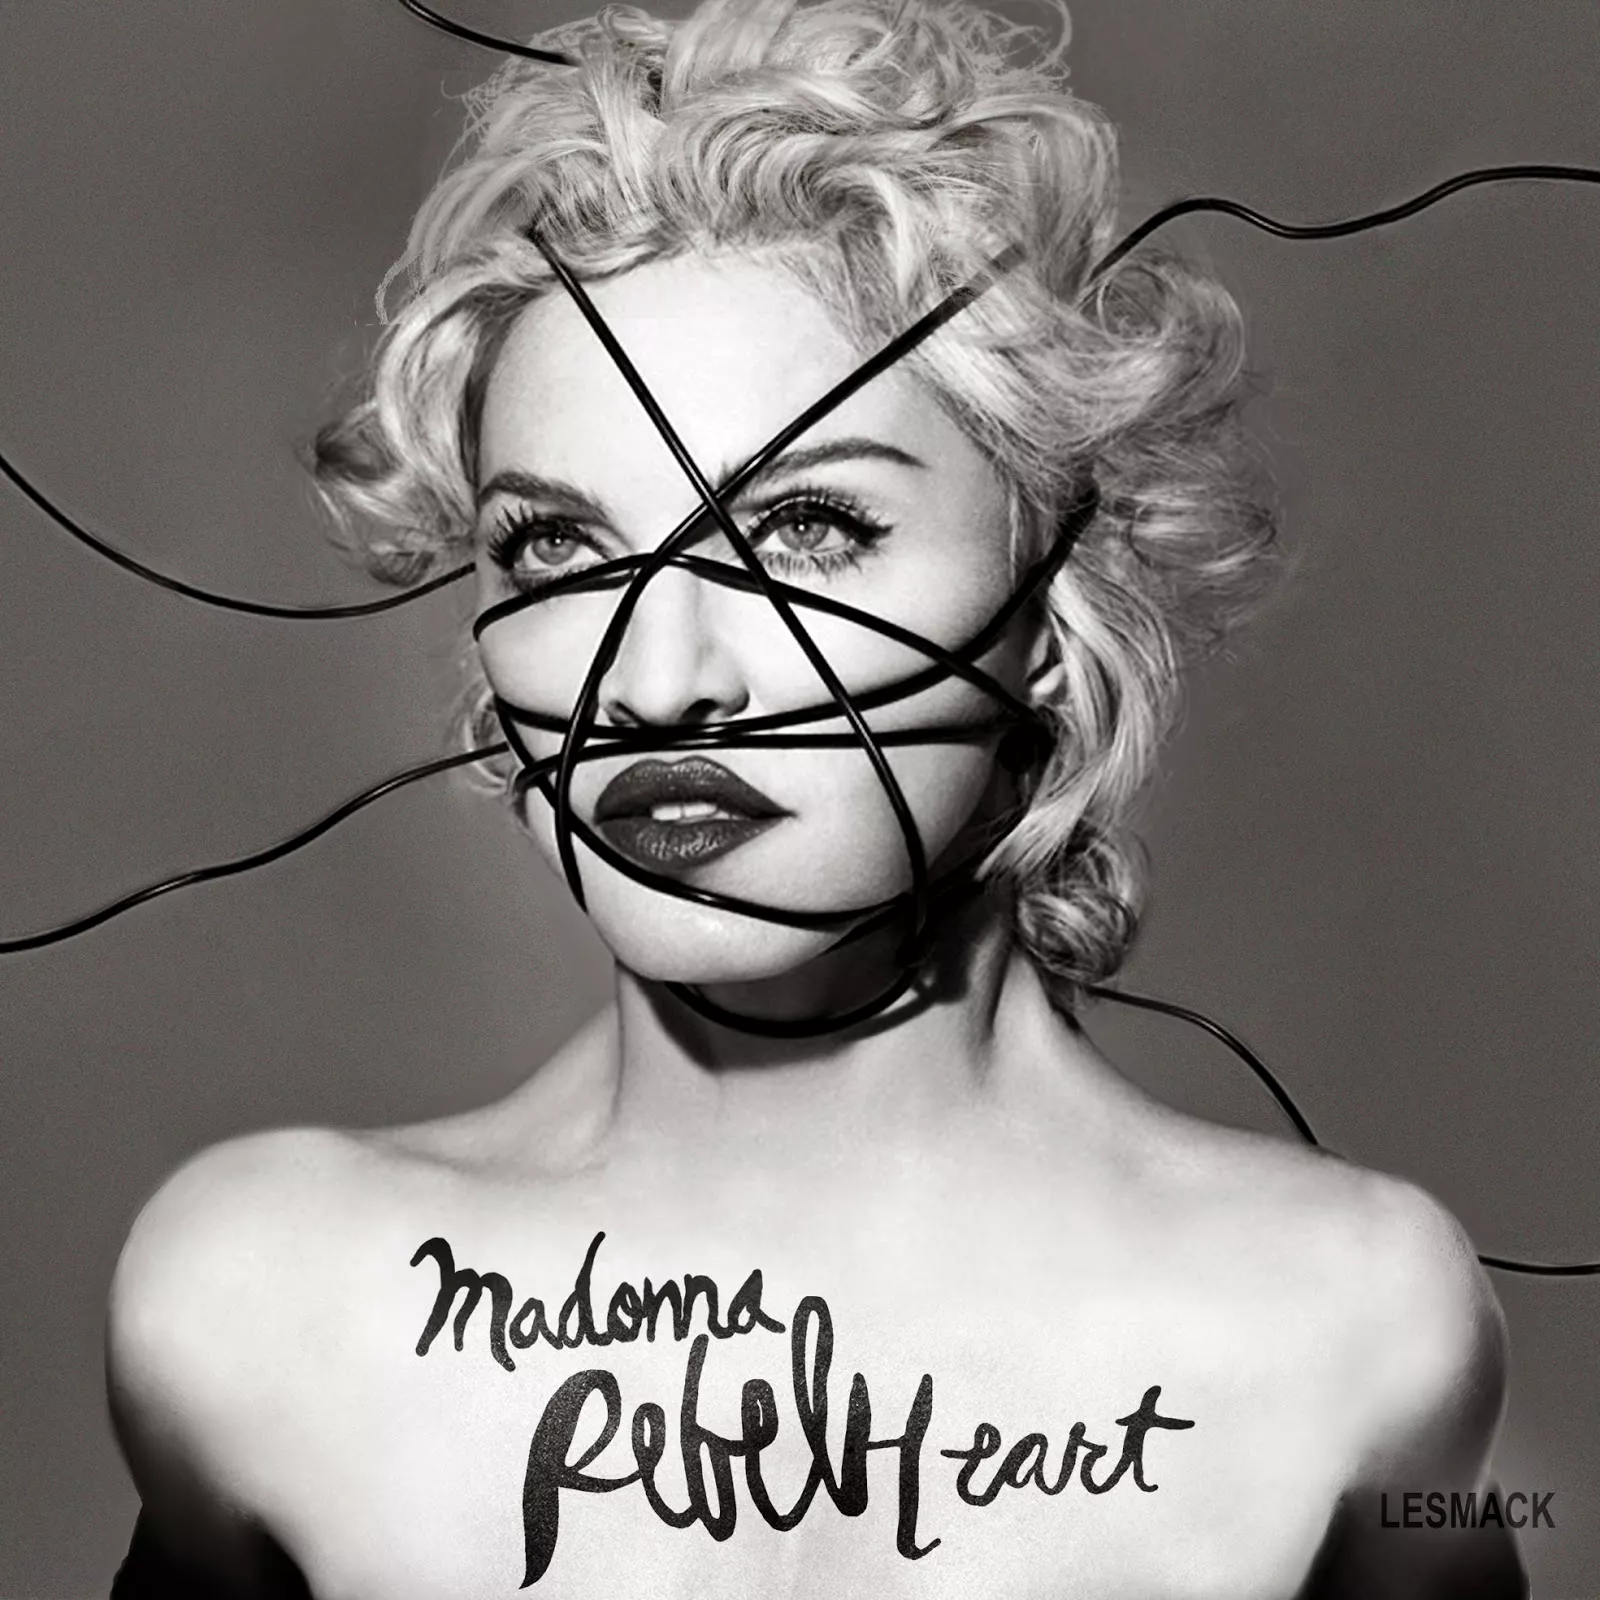 Rebel Heart (Deluxe) - Madonna